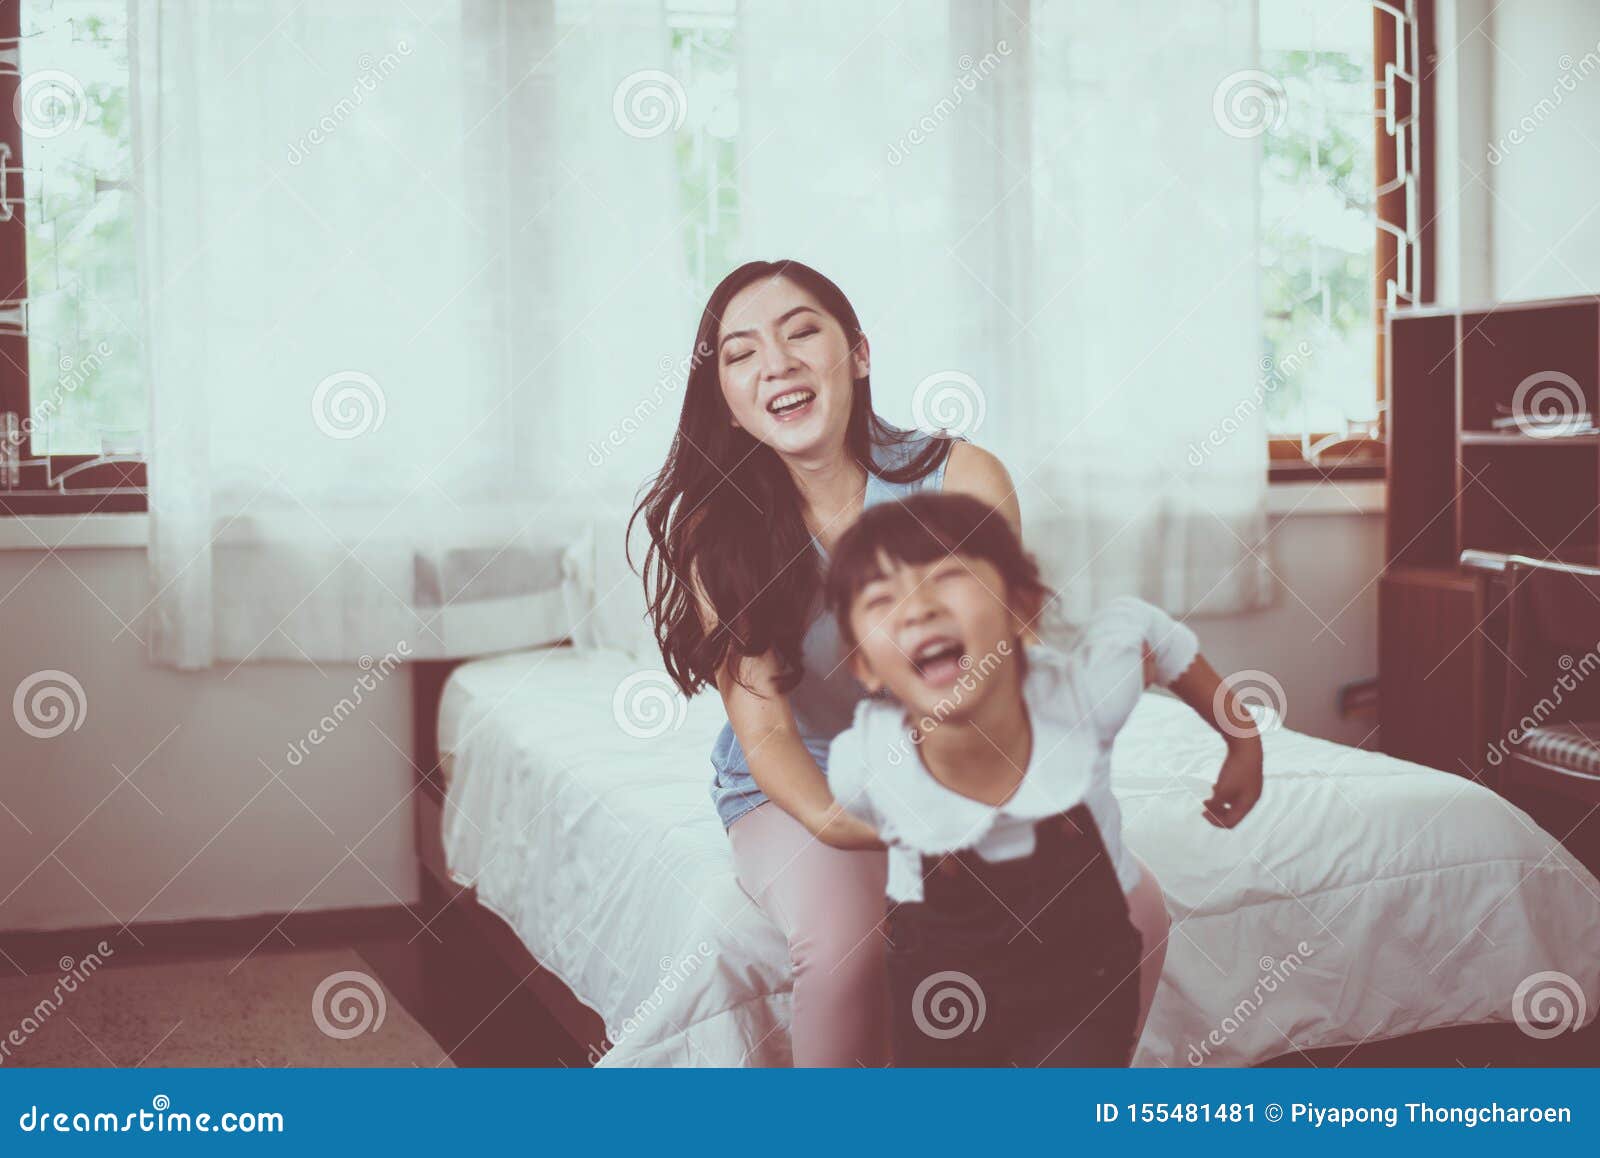 спящая мама азиатка и ее сын фото 105